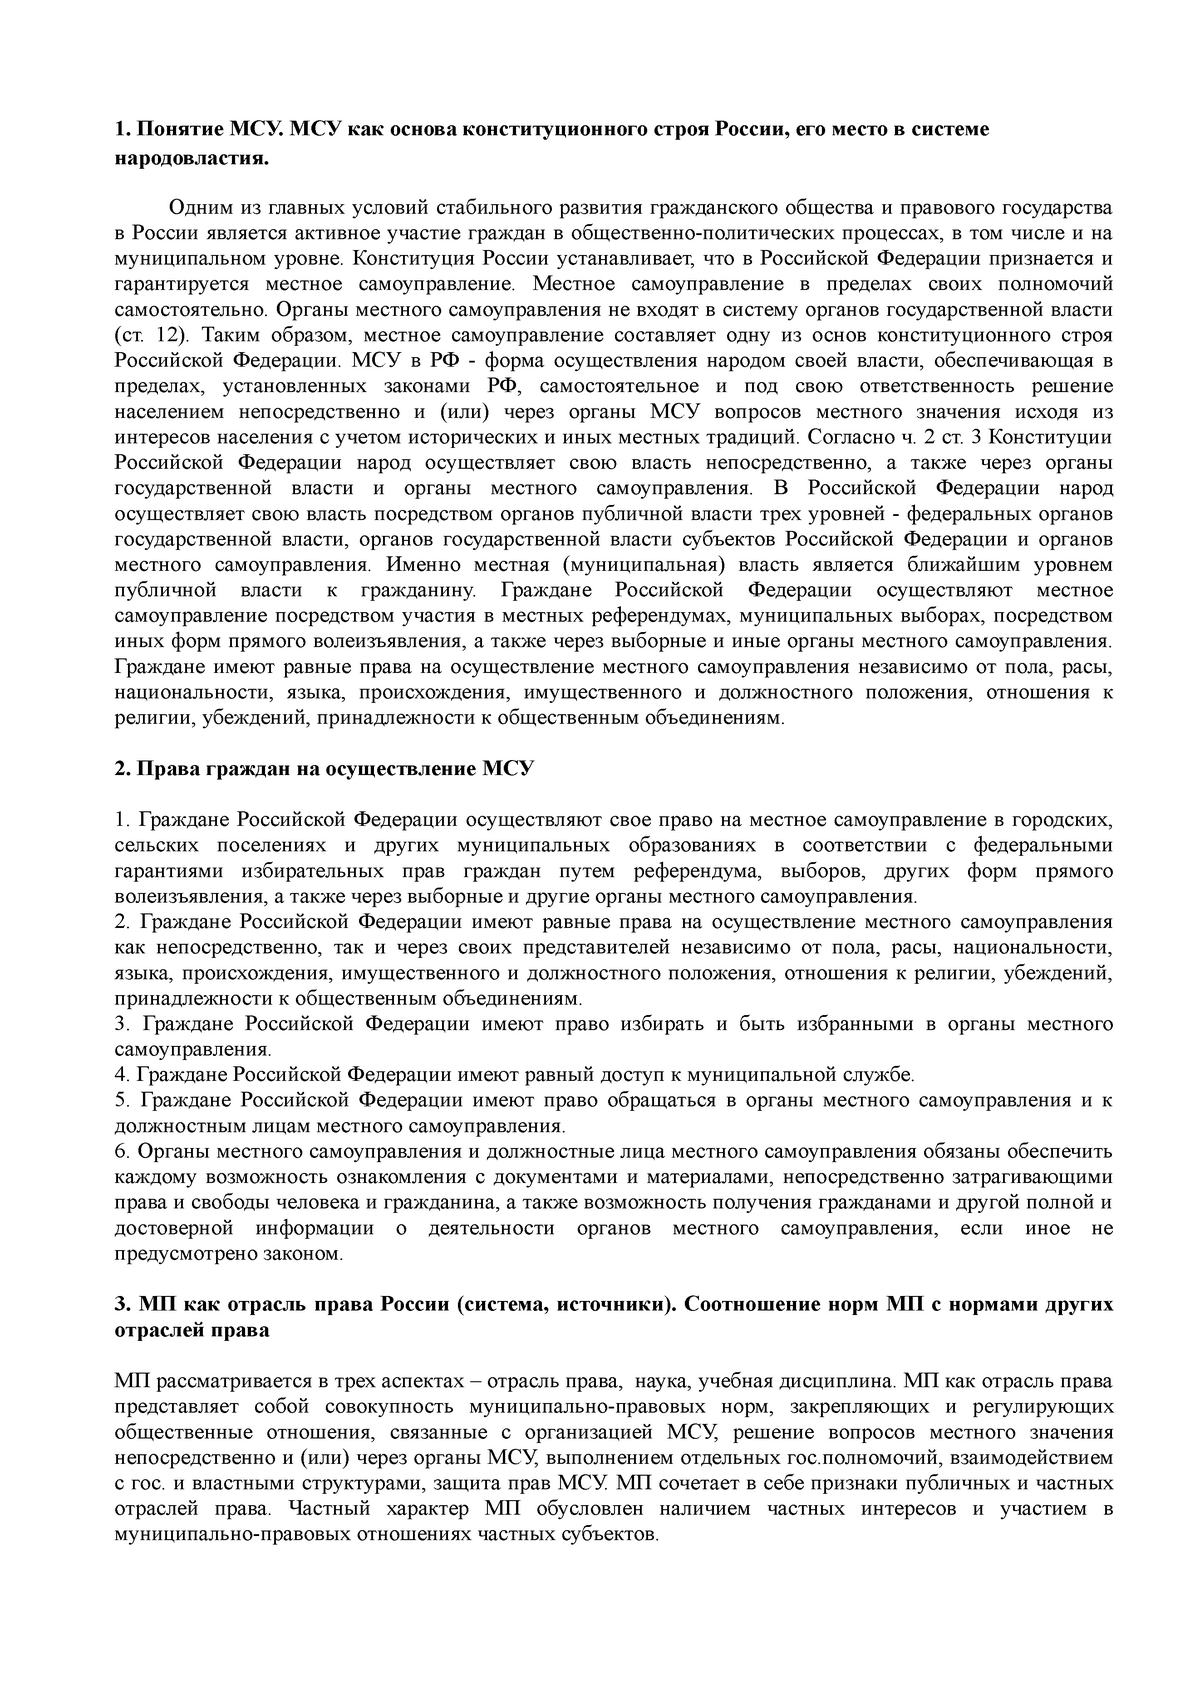 Курсовая работа по теме Правовой анализ форм народовластия в России